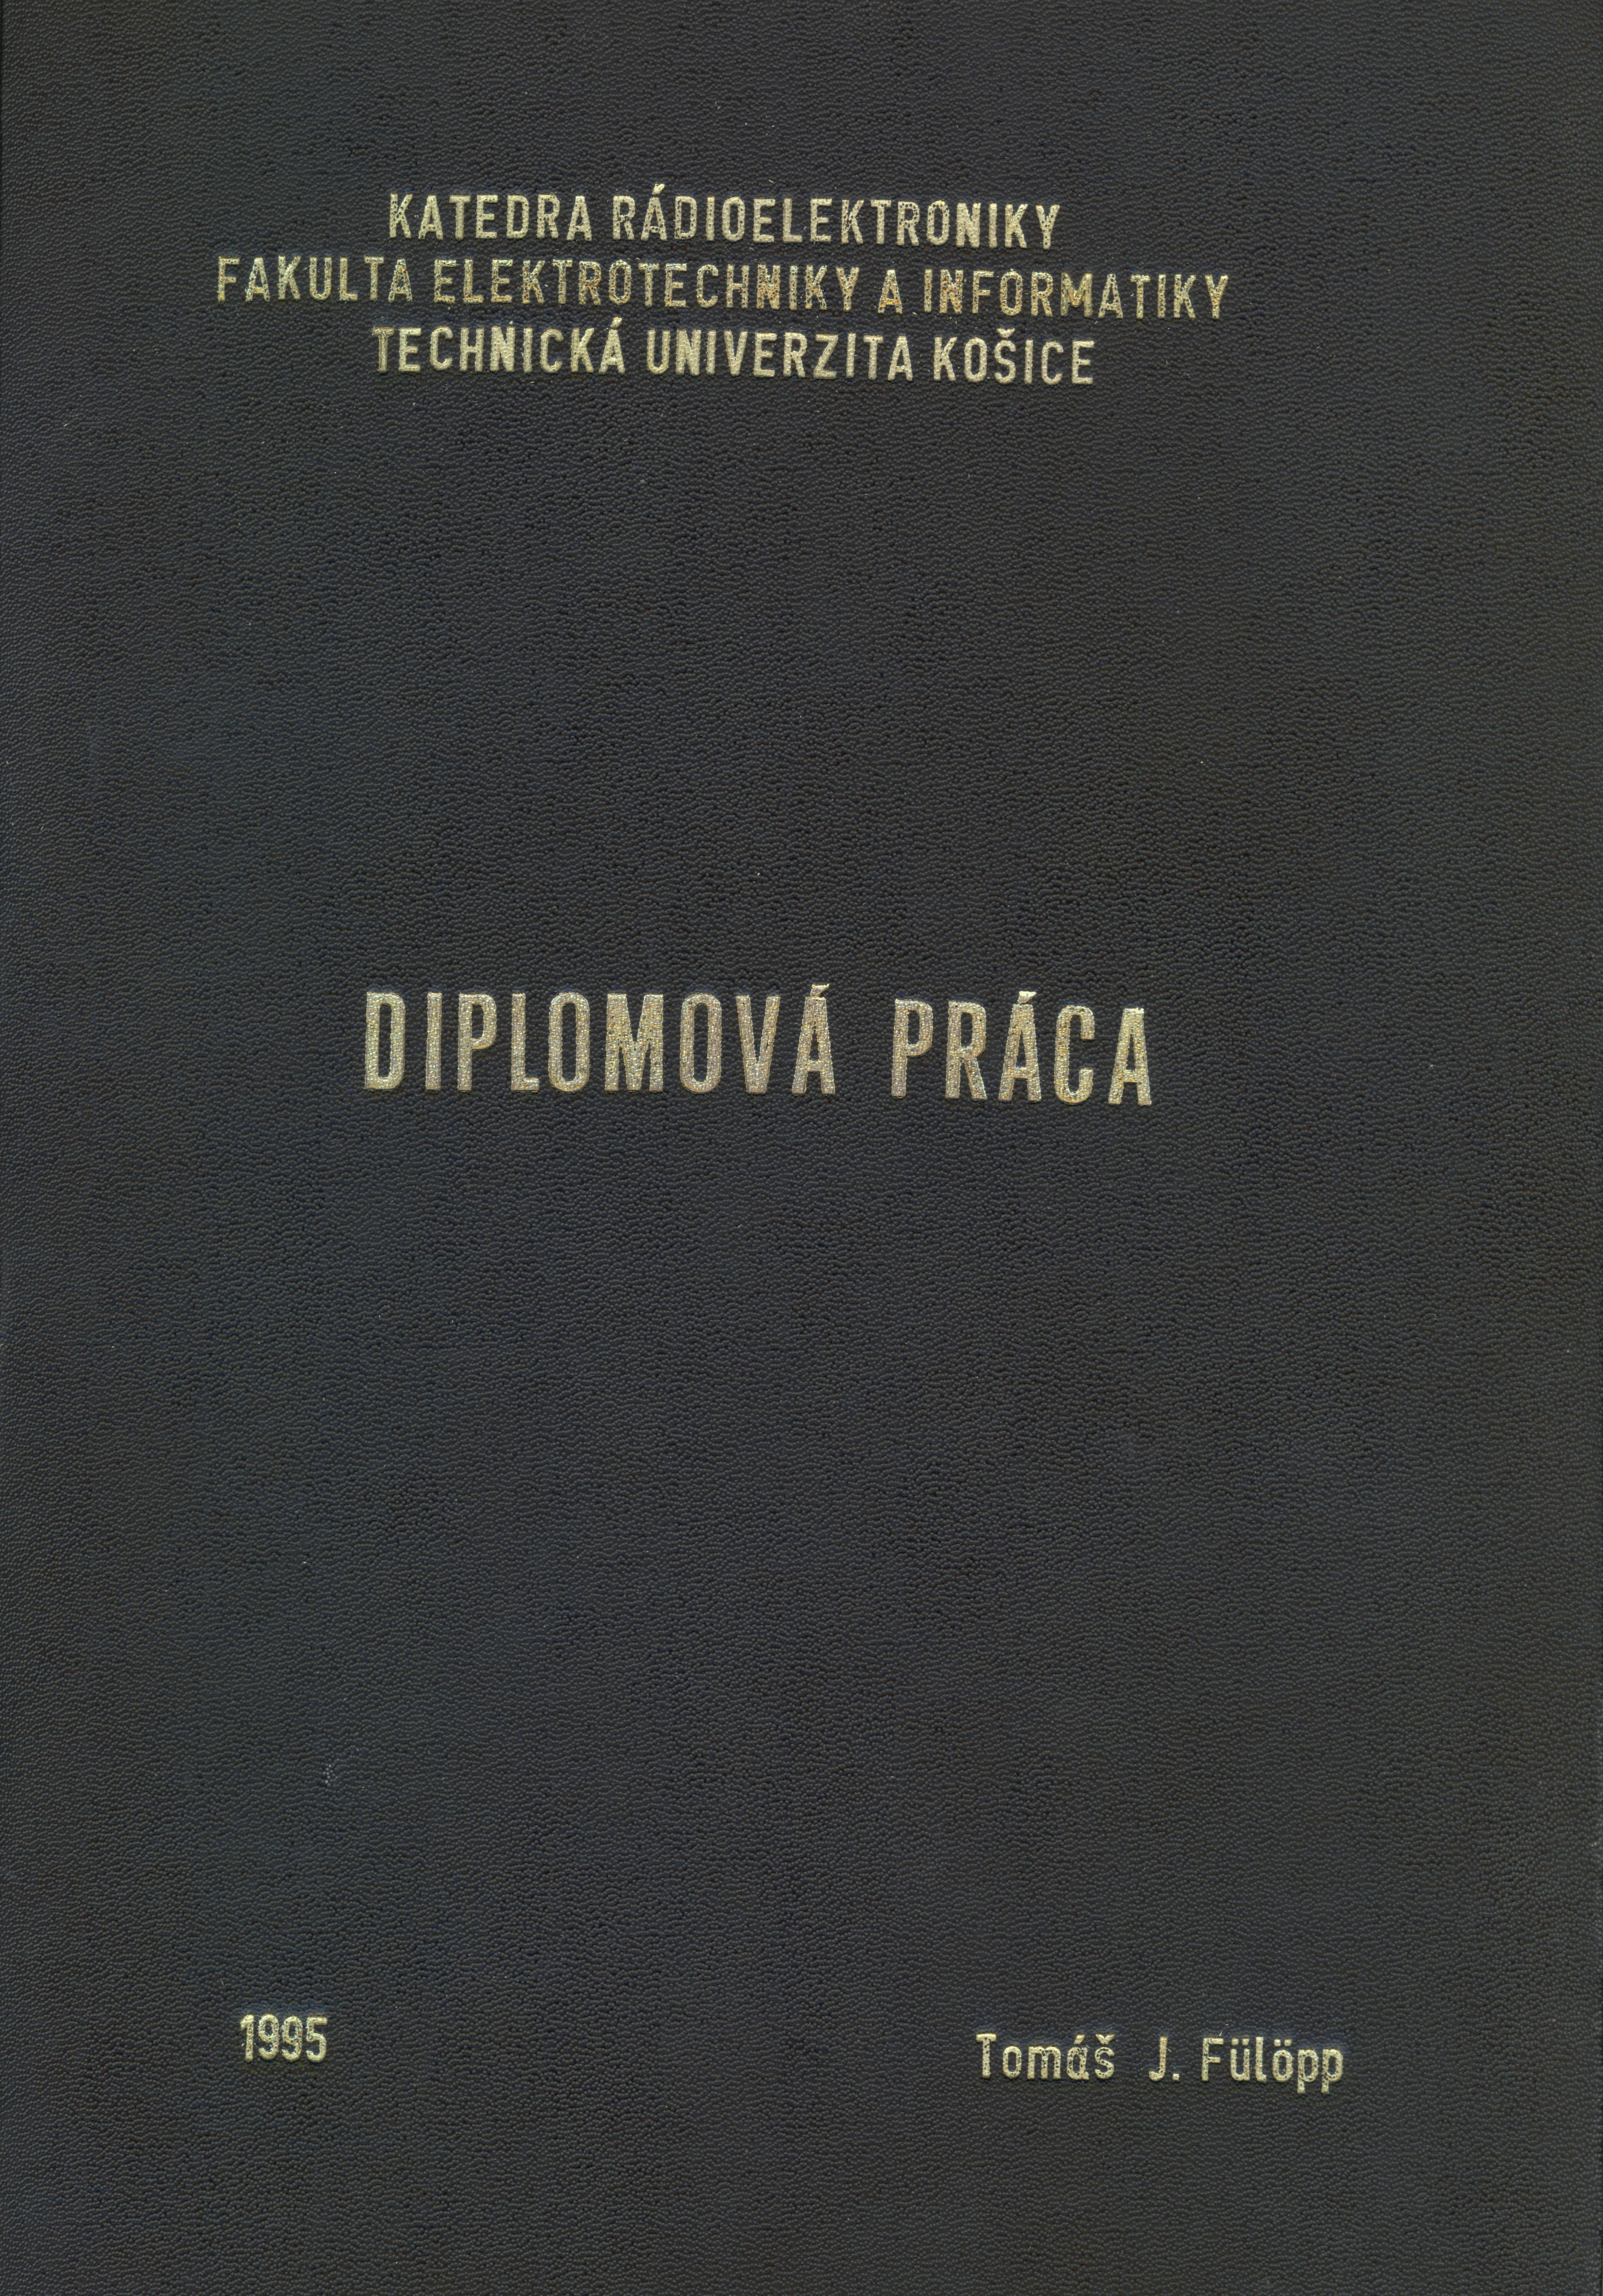 Obálka zviazanej verzie diplomovej práce